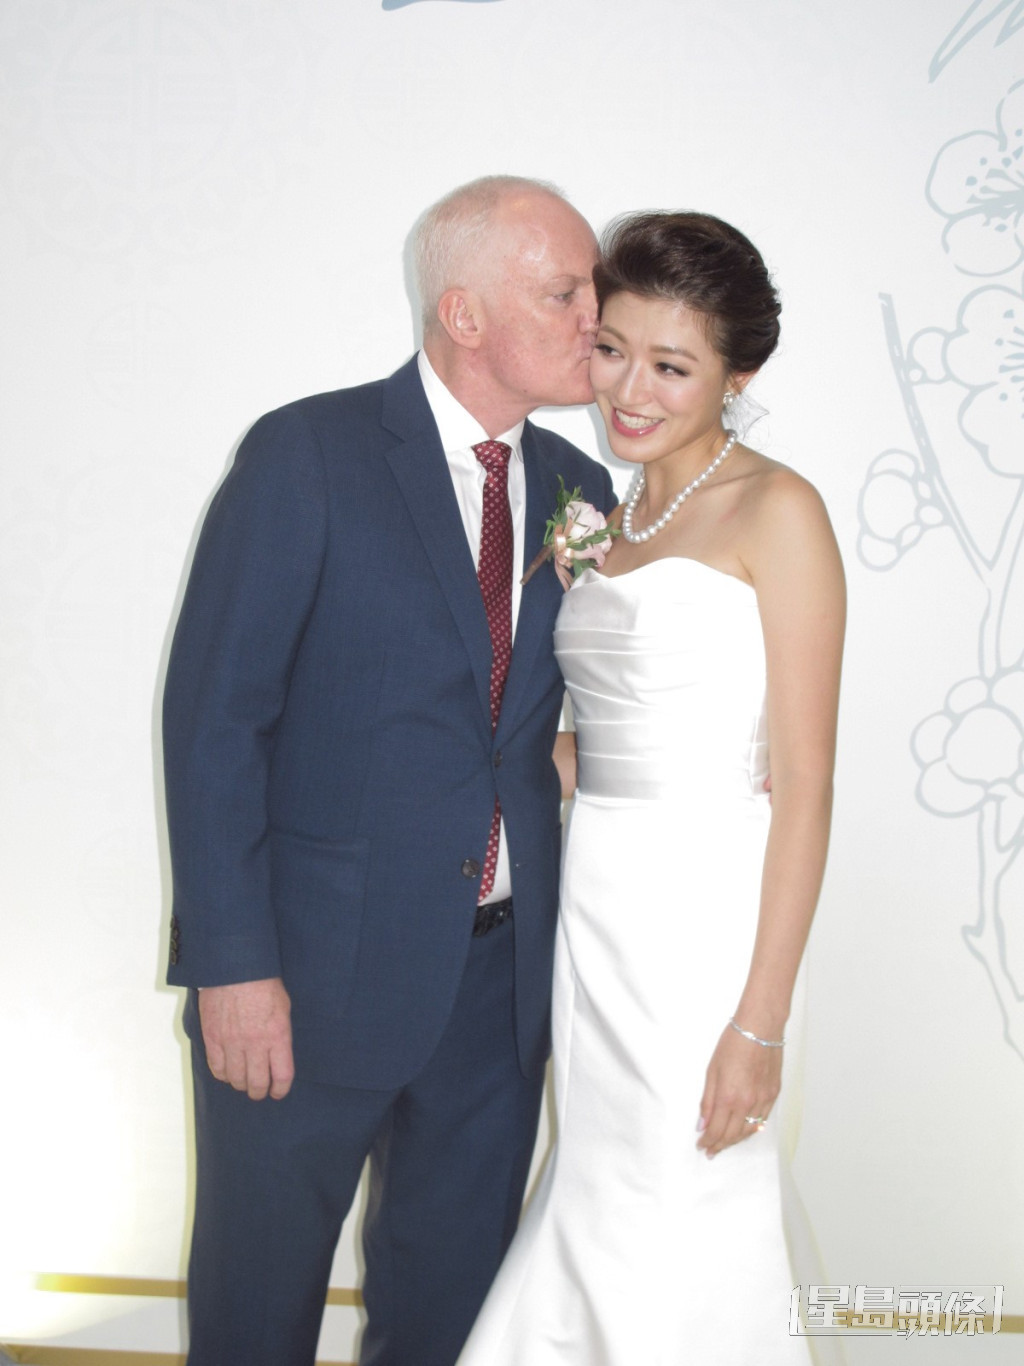 李姿敏2017年嫁给澳洲籍练马师贺贤。